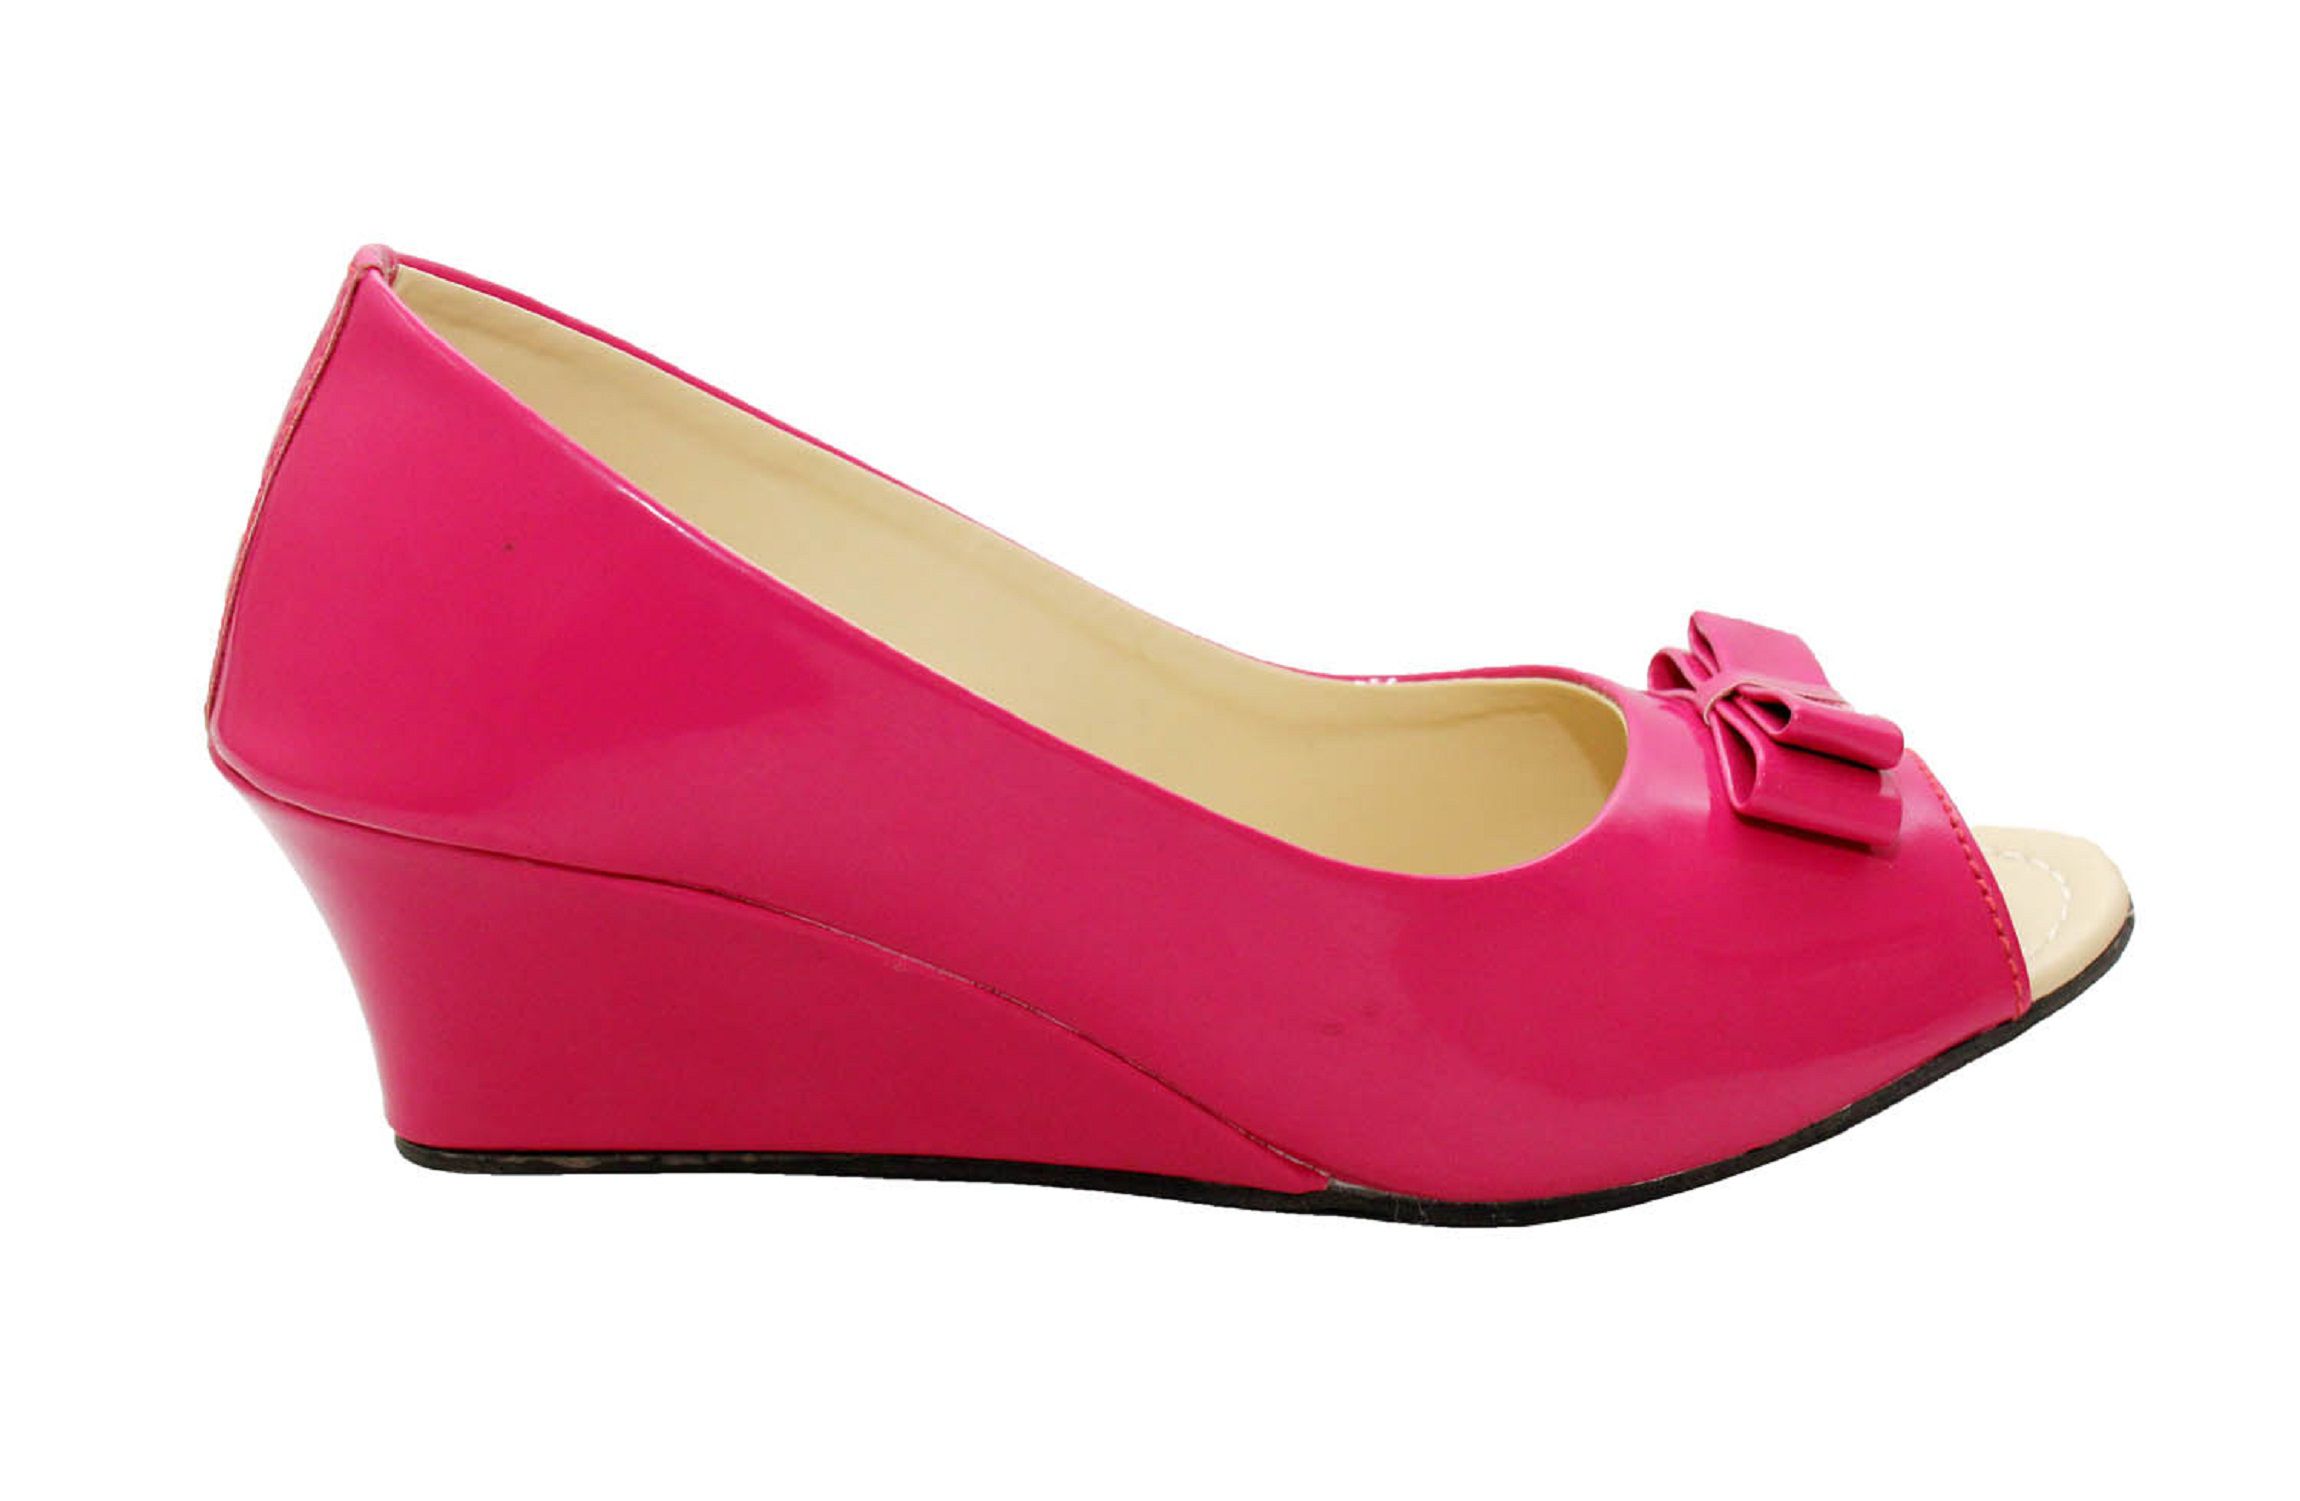 Rocksy Pink Wedges Heels Price in India- Buy Rocksy Pink Wedges Heels ...